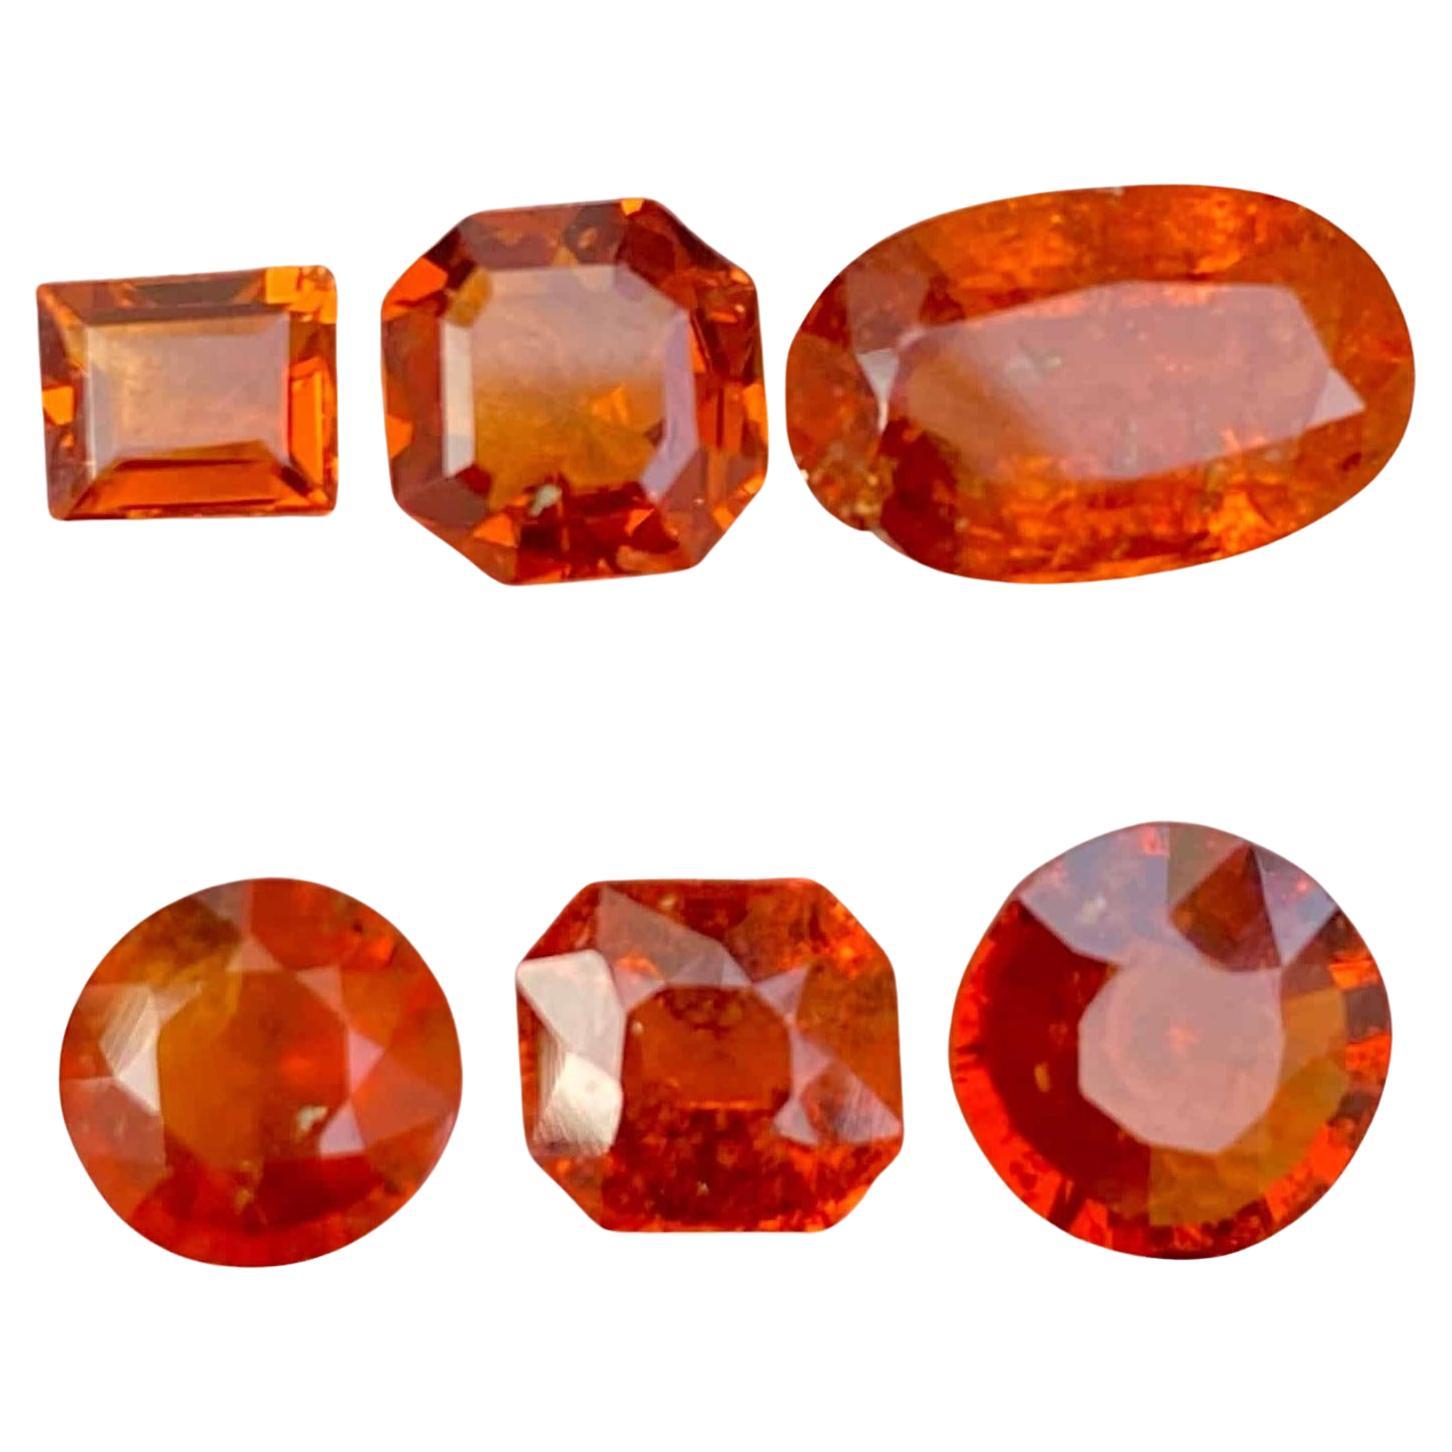 Natural Spessartite Orange Garnet Stones Lot Loose Gemstone From Africa For Sale